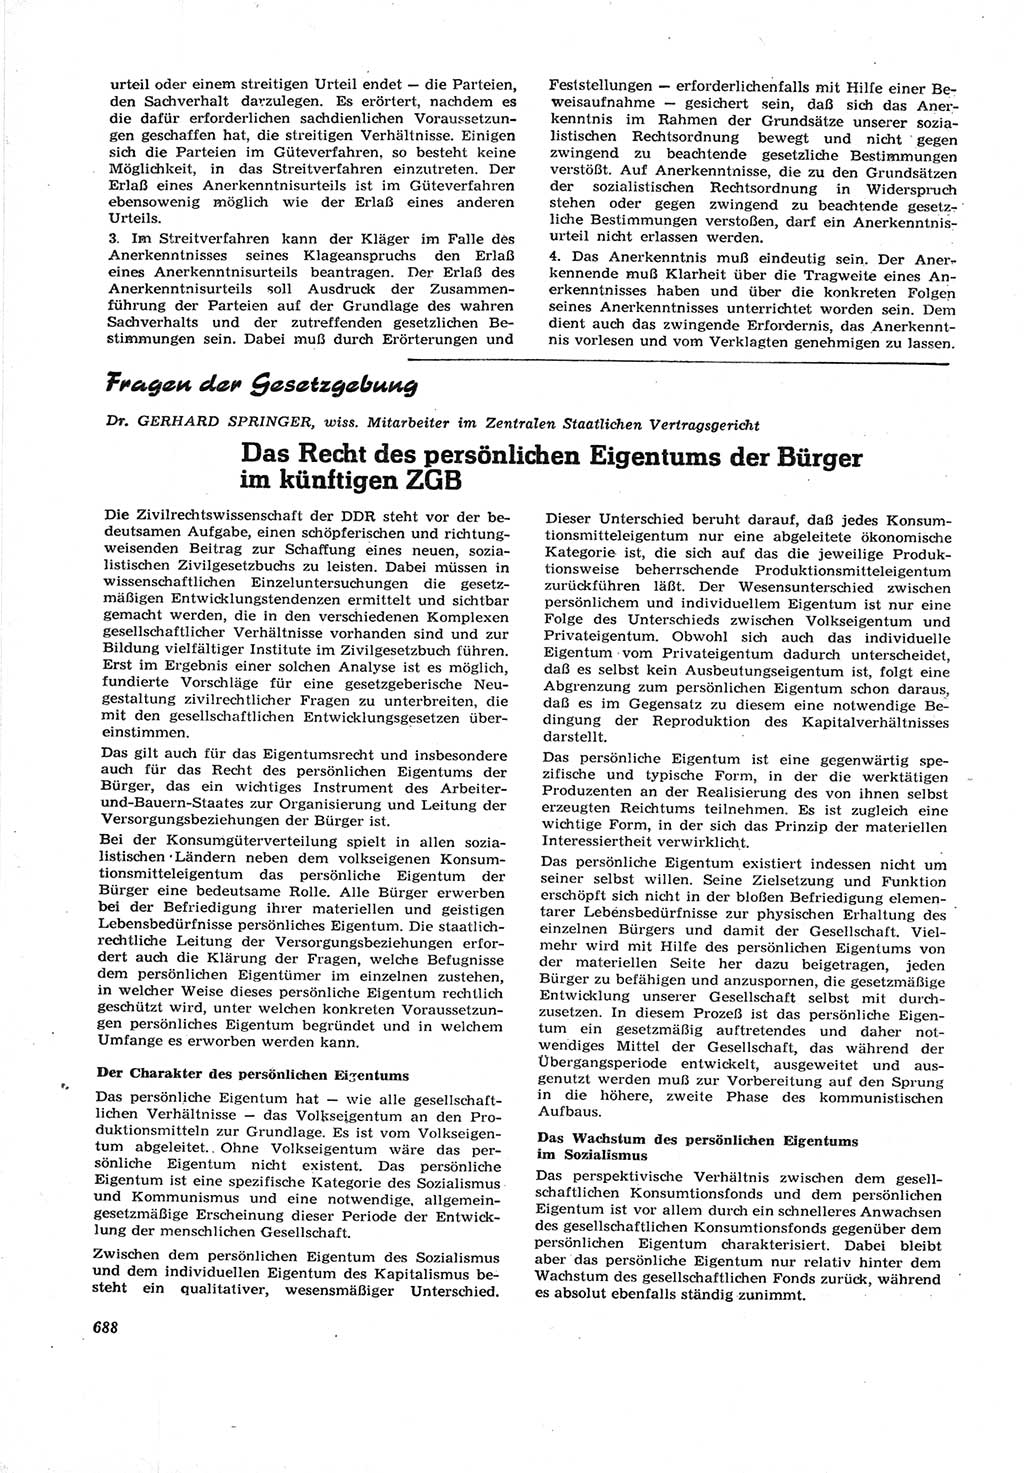 Neue Justiz (NJ), Zeitschrift für Recht und Rechtswissenschaft [Deutsche Demokratische Republik (DDR)], 17. Jahrgang 1963, Seite 688 (NJ DDR 1963, S. 688)